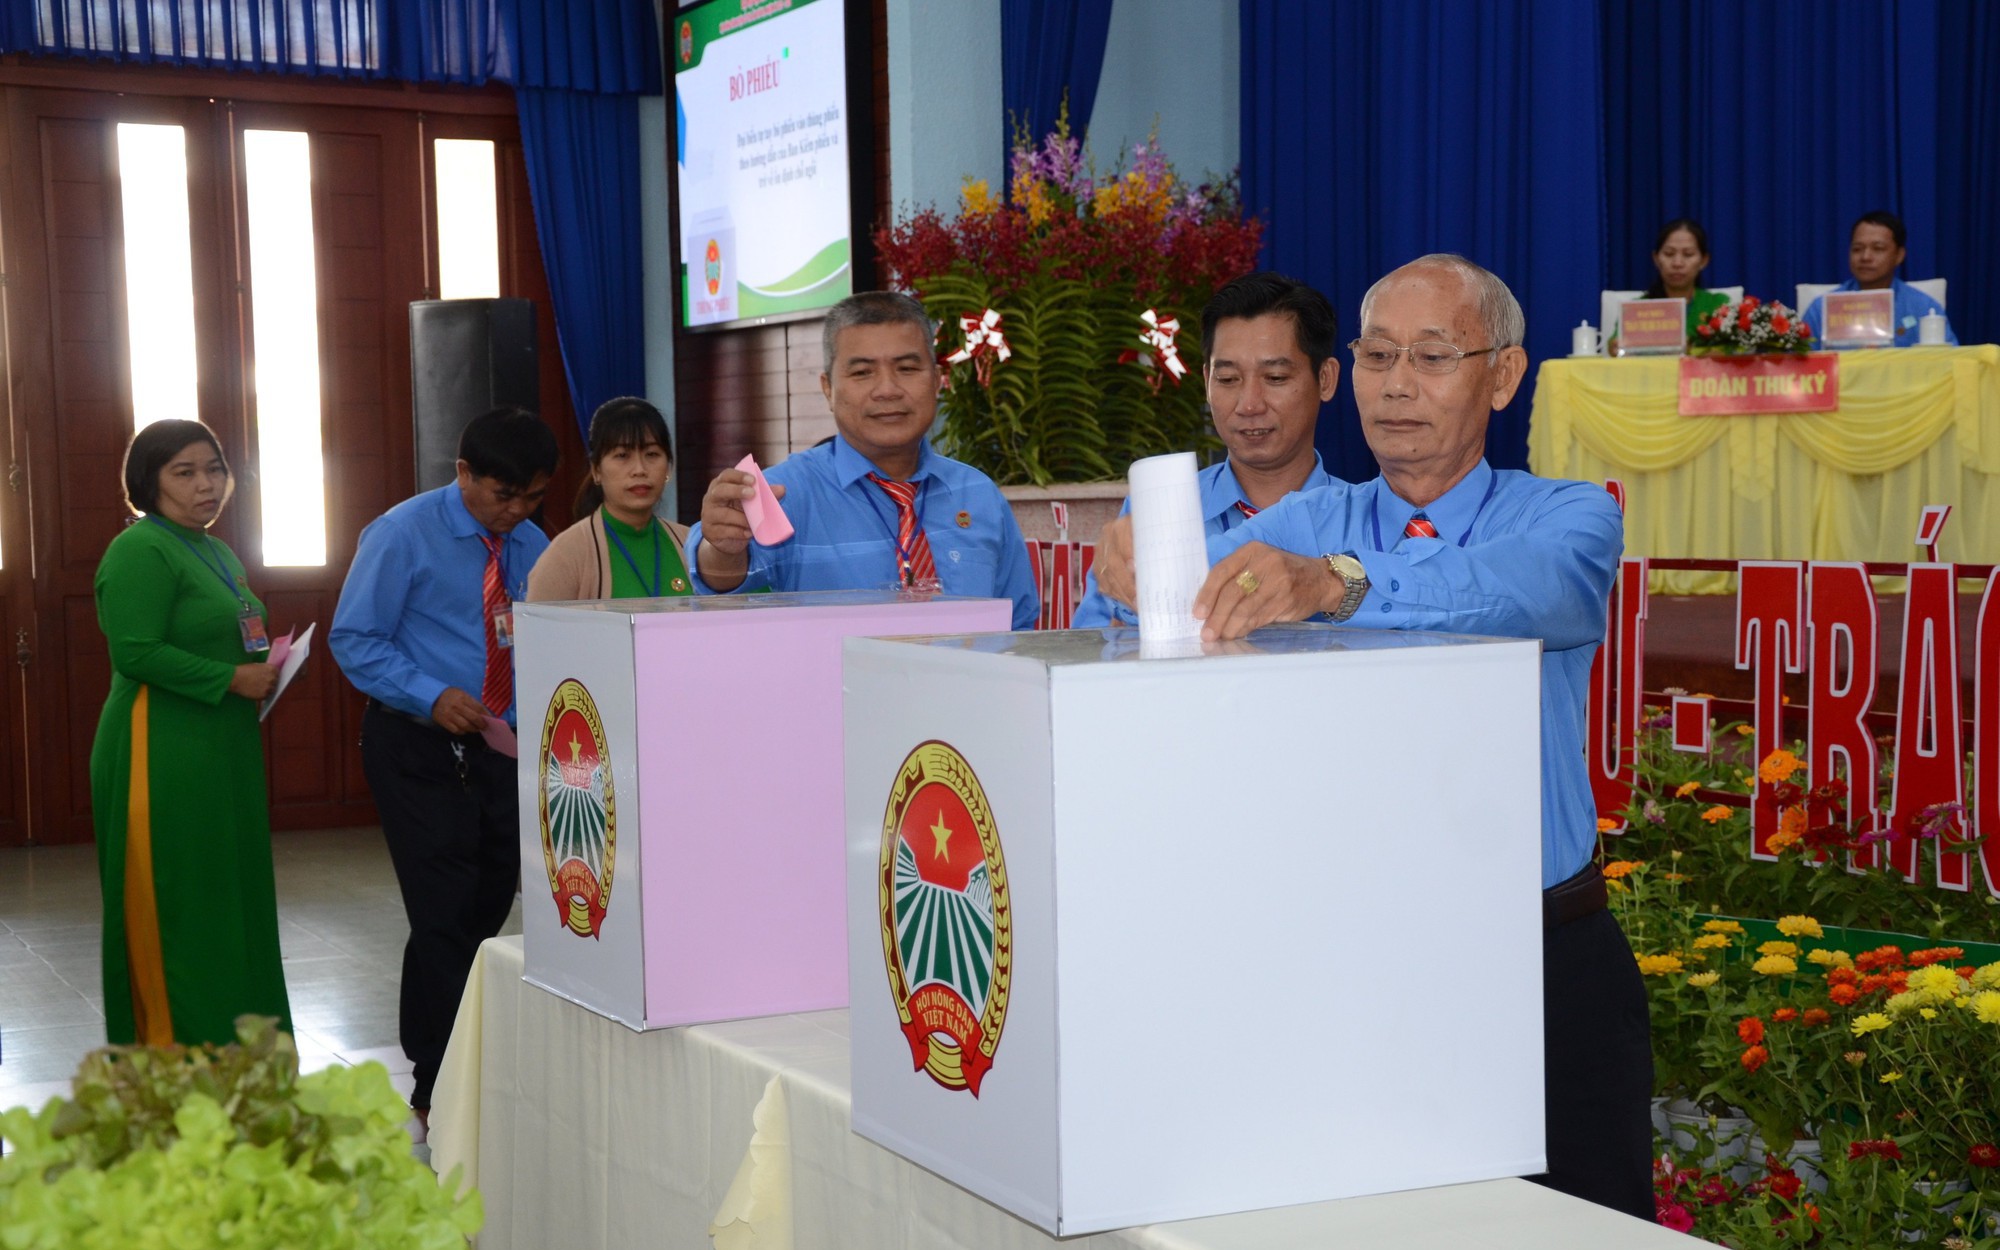 Đại hội Nông dân huyện Củ Chi, ông Võ Văn Thuận tái đắc cử chức danh Chủ tịch 